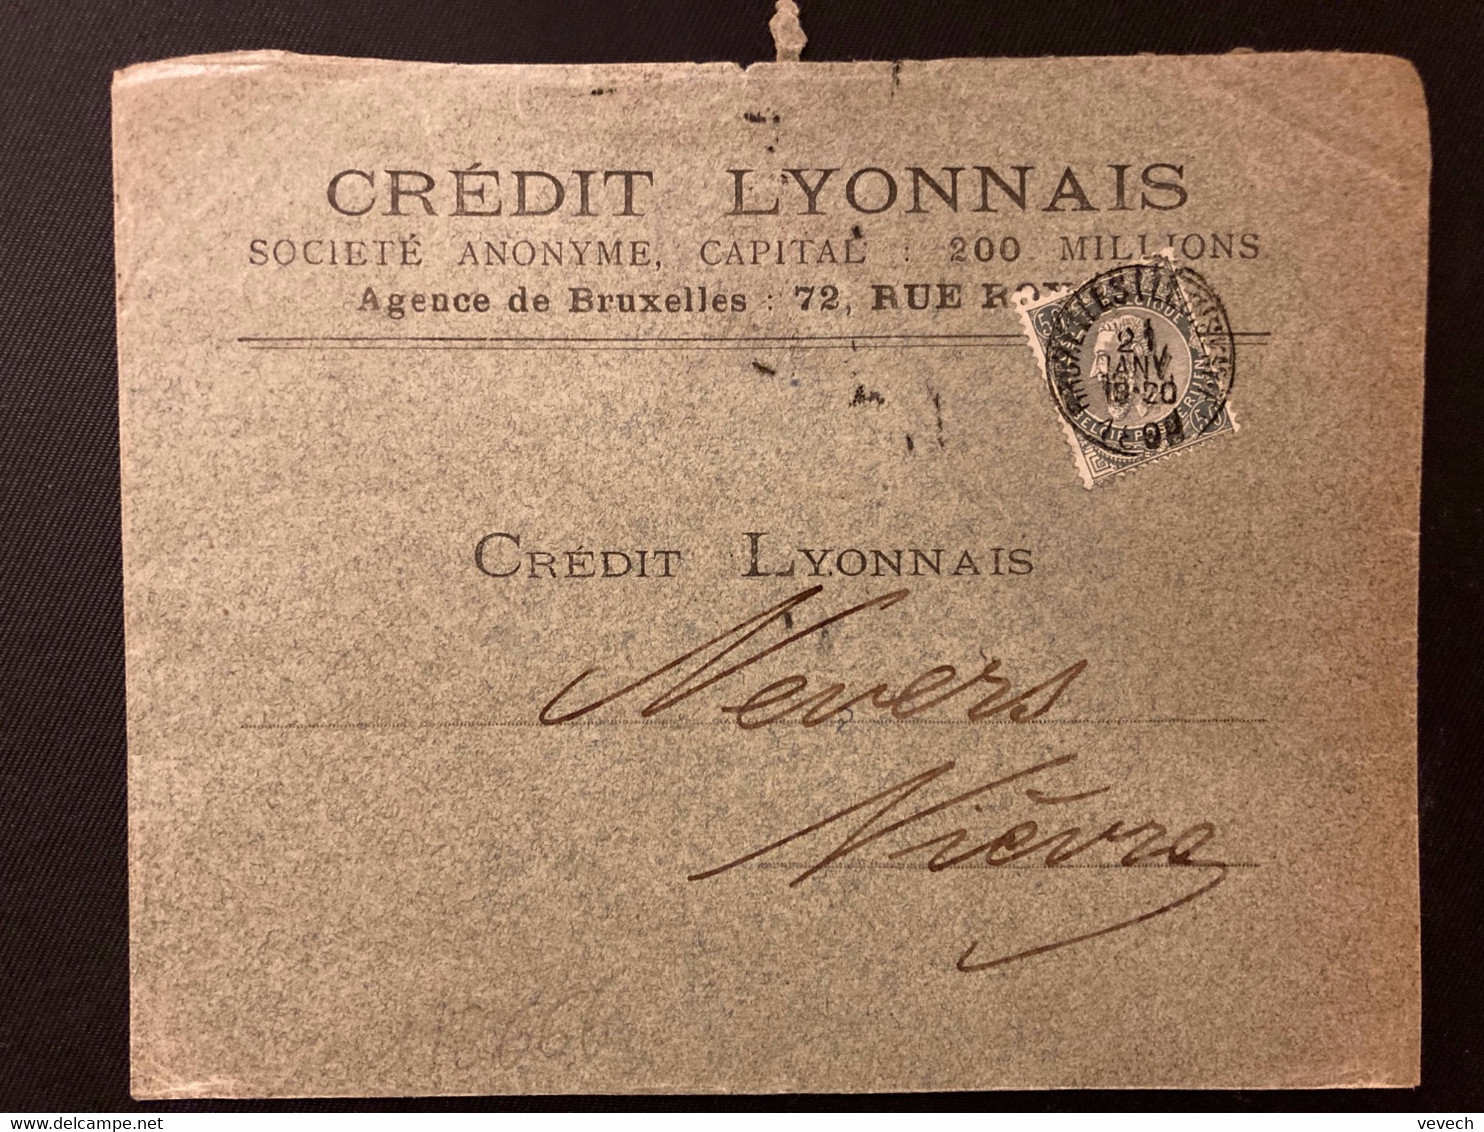 LETTRE Pour La FRANCE TP 50 Perforé CL OBL;21 JANV 1899 BRUXELLES + CREDIT LYONNAIS BANQUE - 1863-09